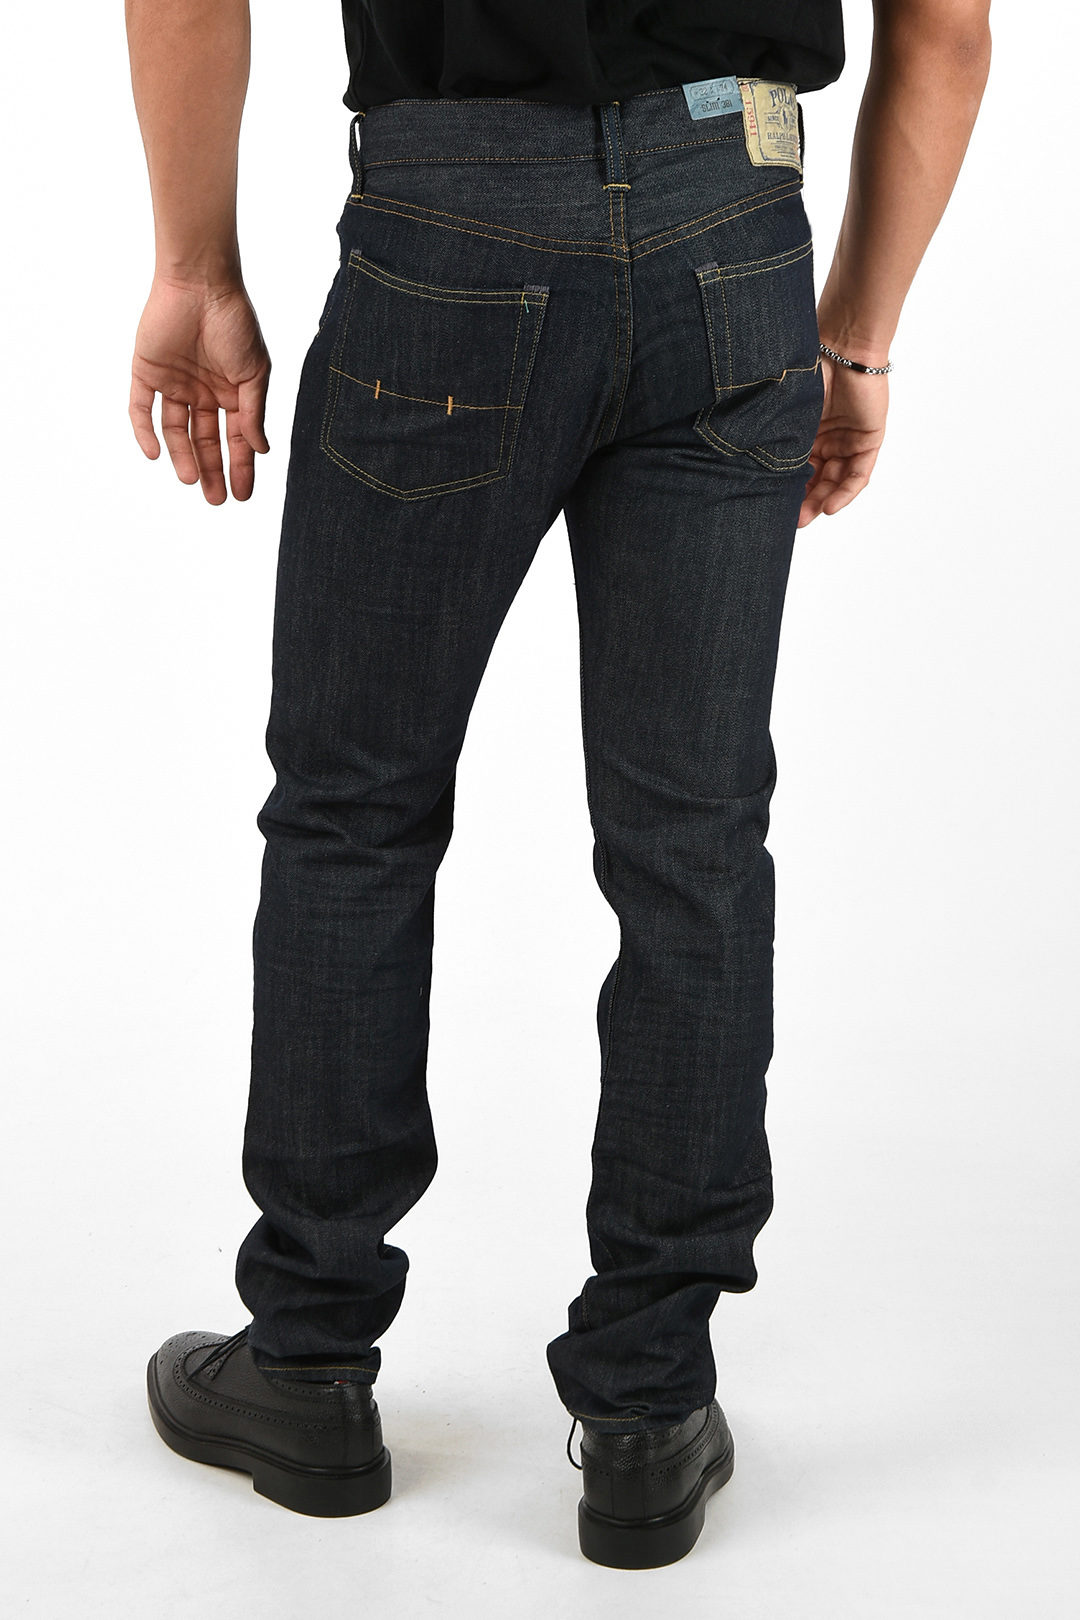 hartstochtelijk Mogelijk astronomie Polo Ralph Lauren 19cm slim fit 381 jeans L34 men - Glamood Outlet